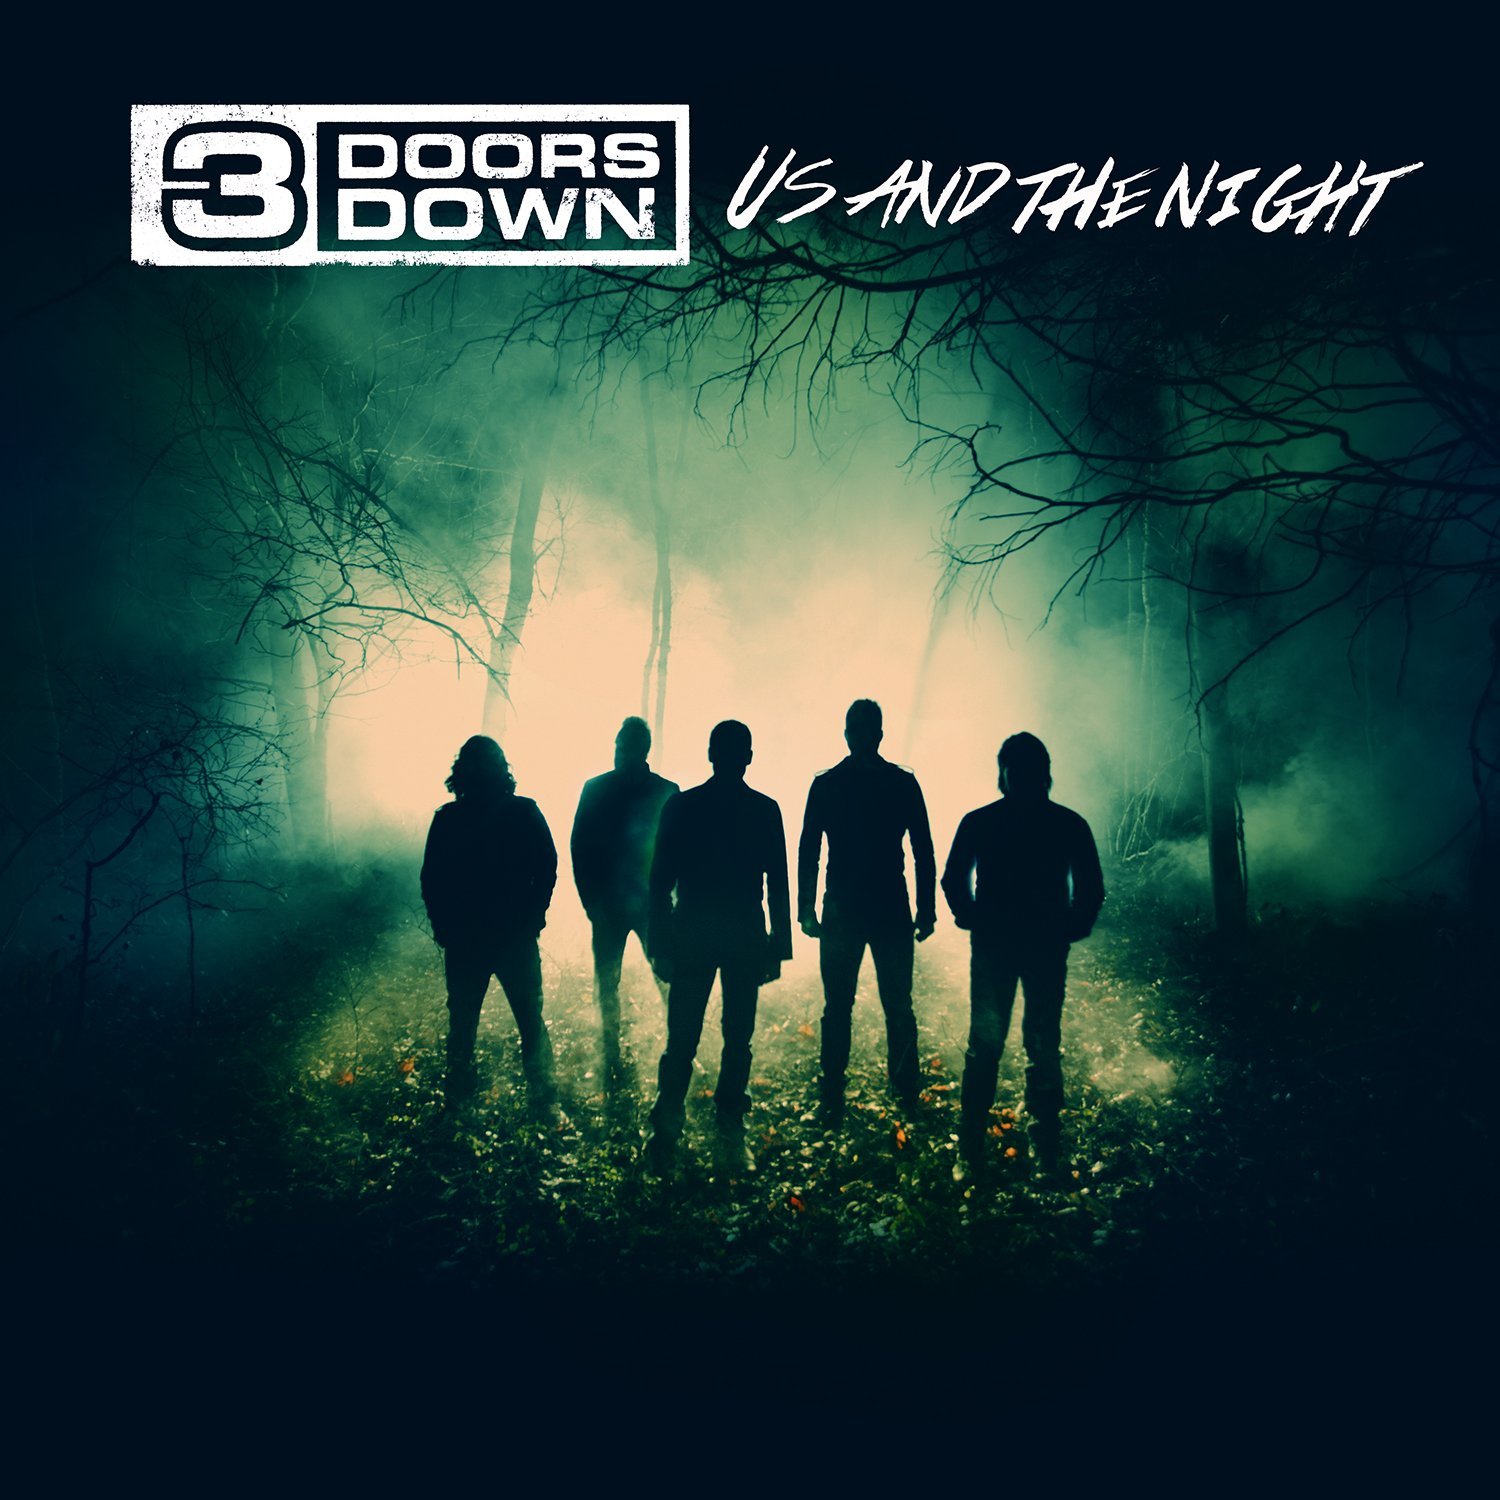 3 DOORS DOWN / US & THE NIGHT (LP)